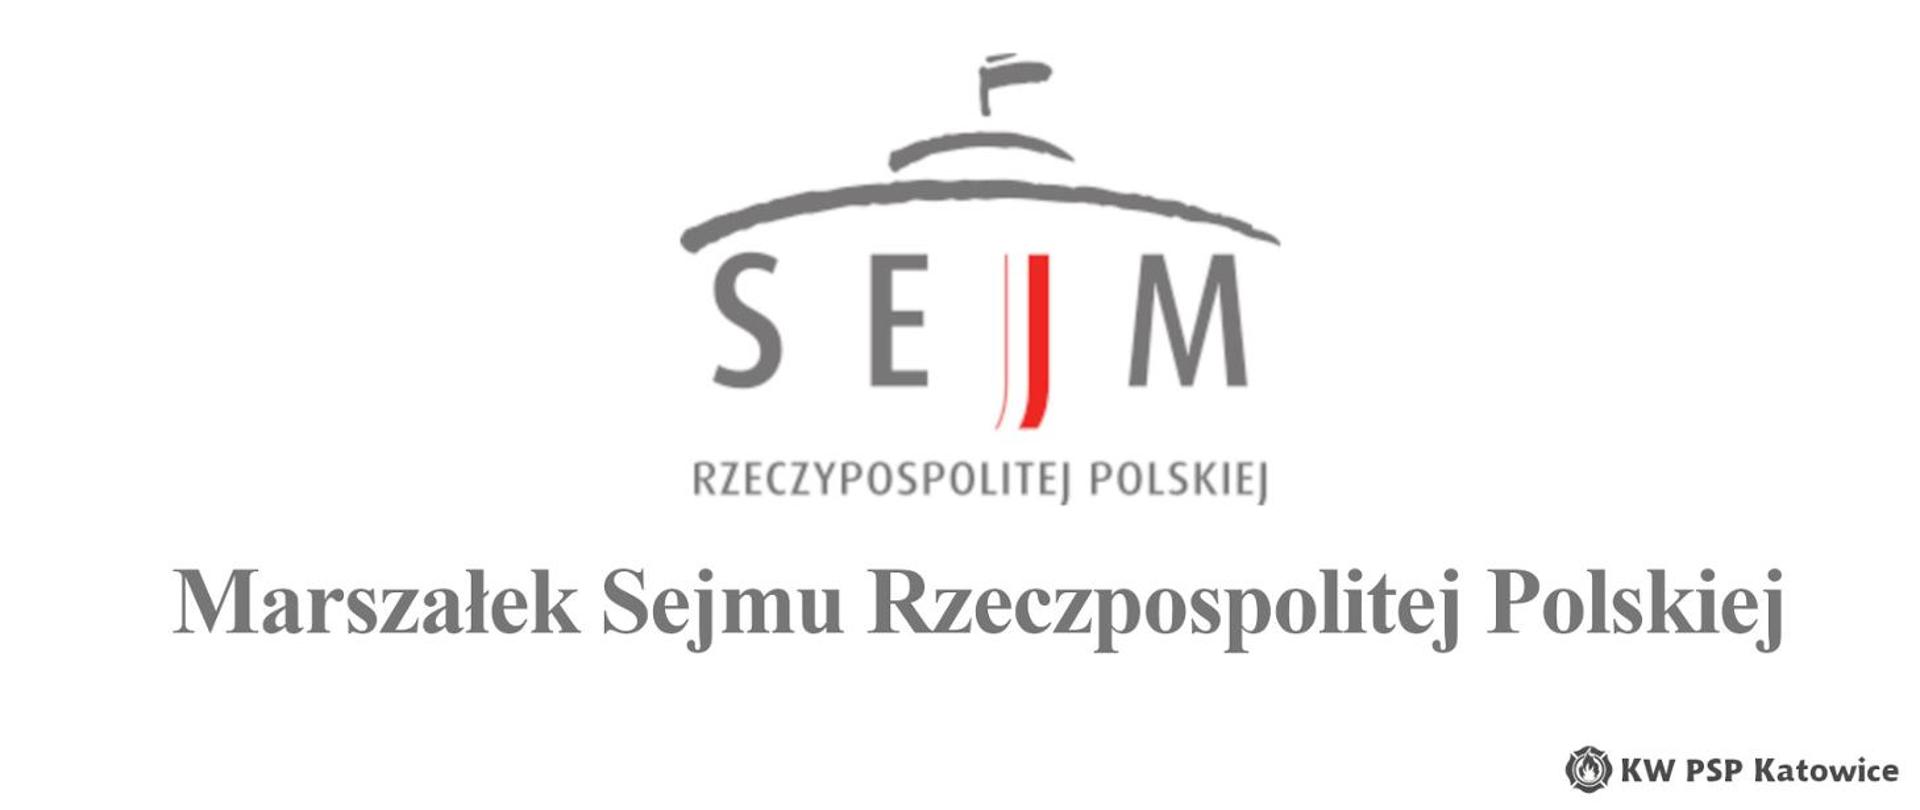 Życzenia_Marszałek_Sejmu_logo